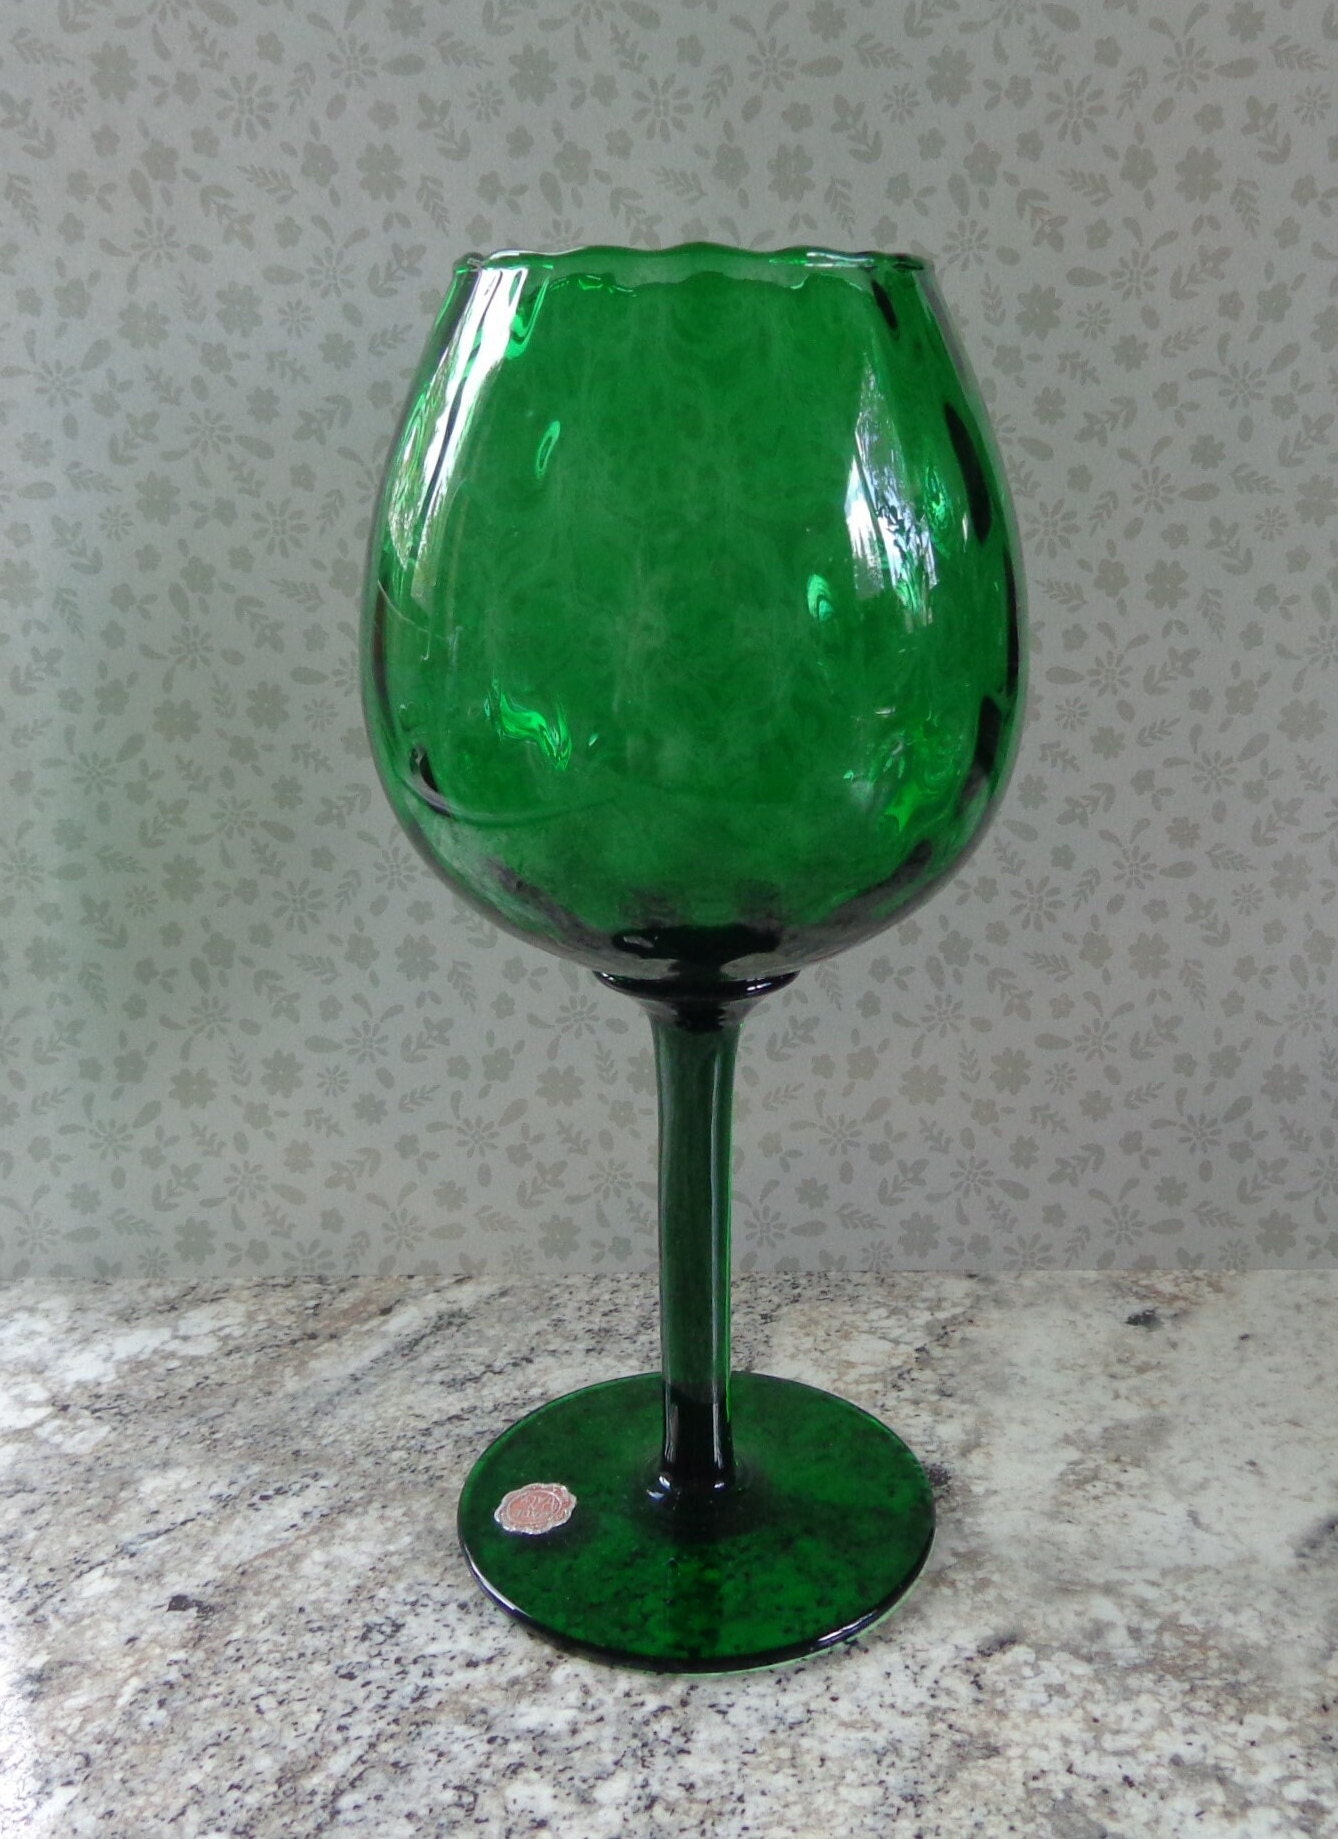 solhui vintage green wave glass goblets